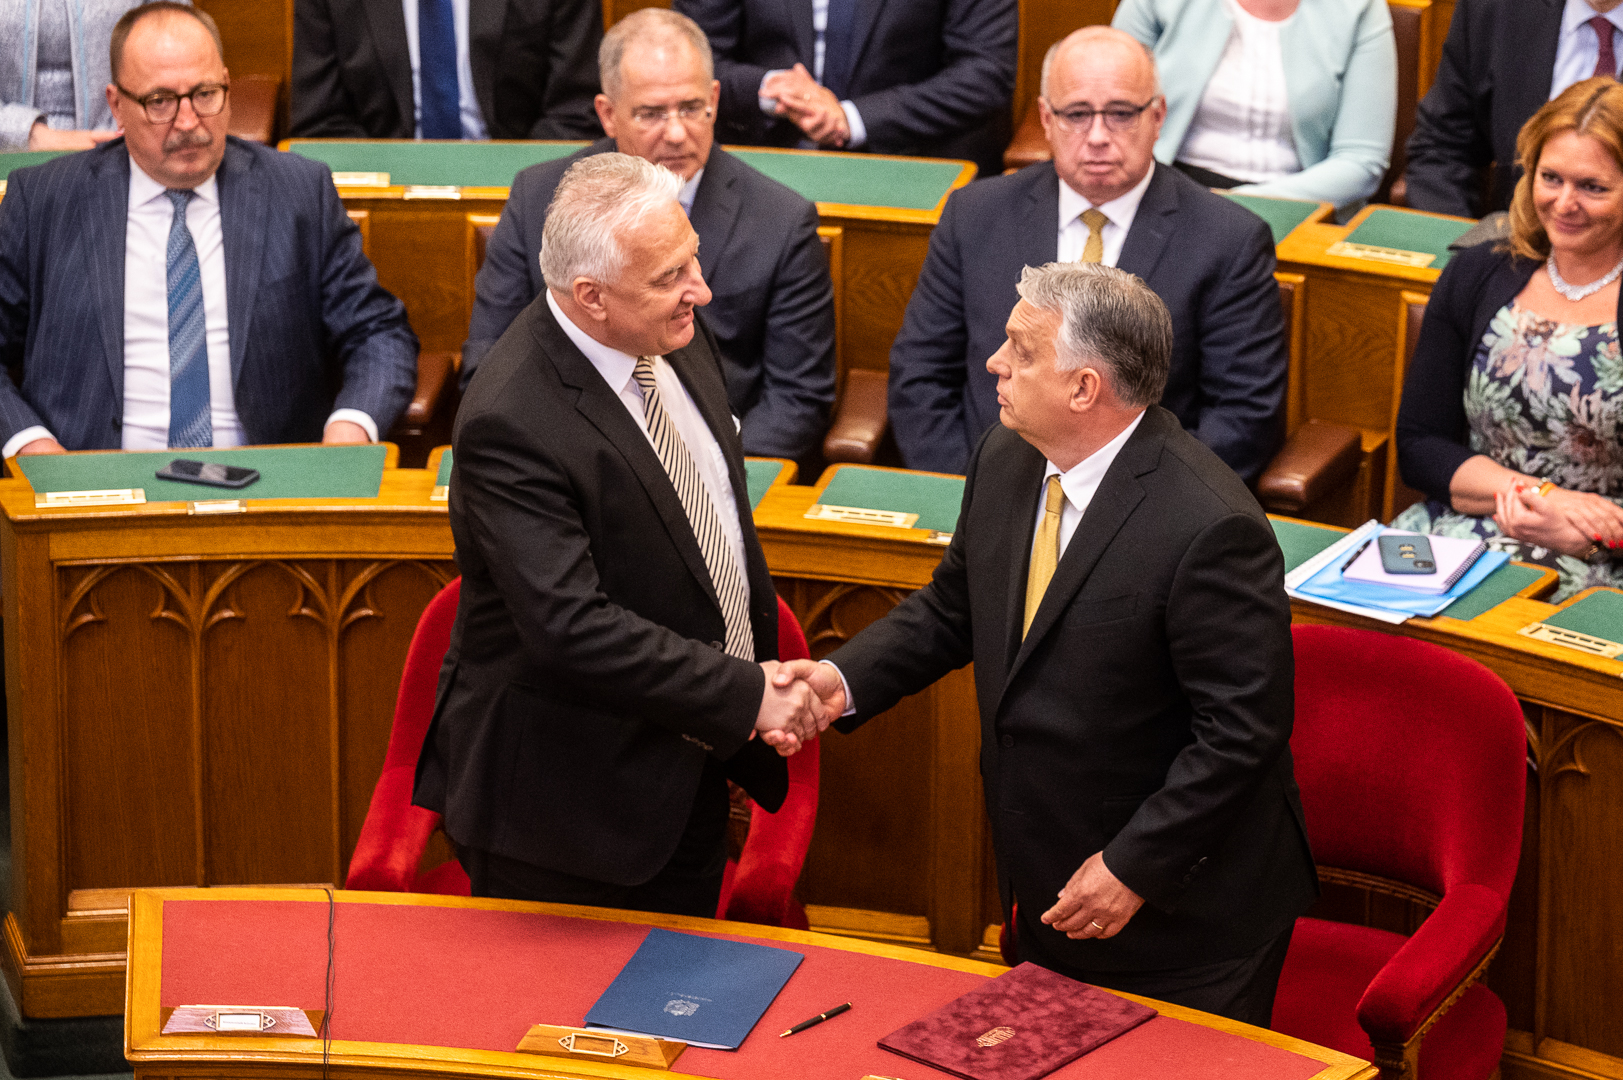 Semjén Zsolt gratulál Orbán Viktornak miniszterelnökké történő megválasztásához